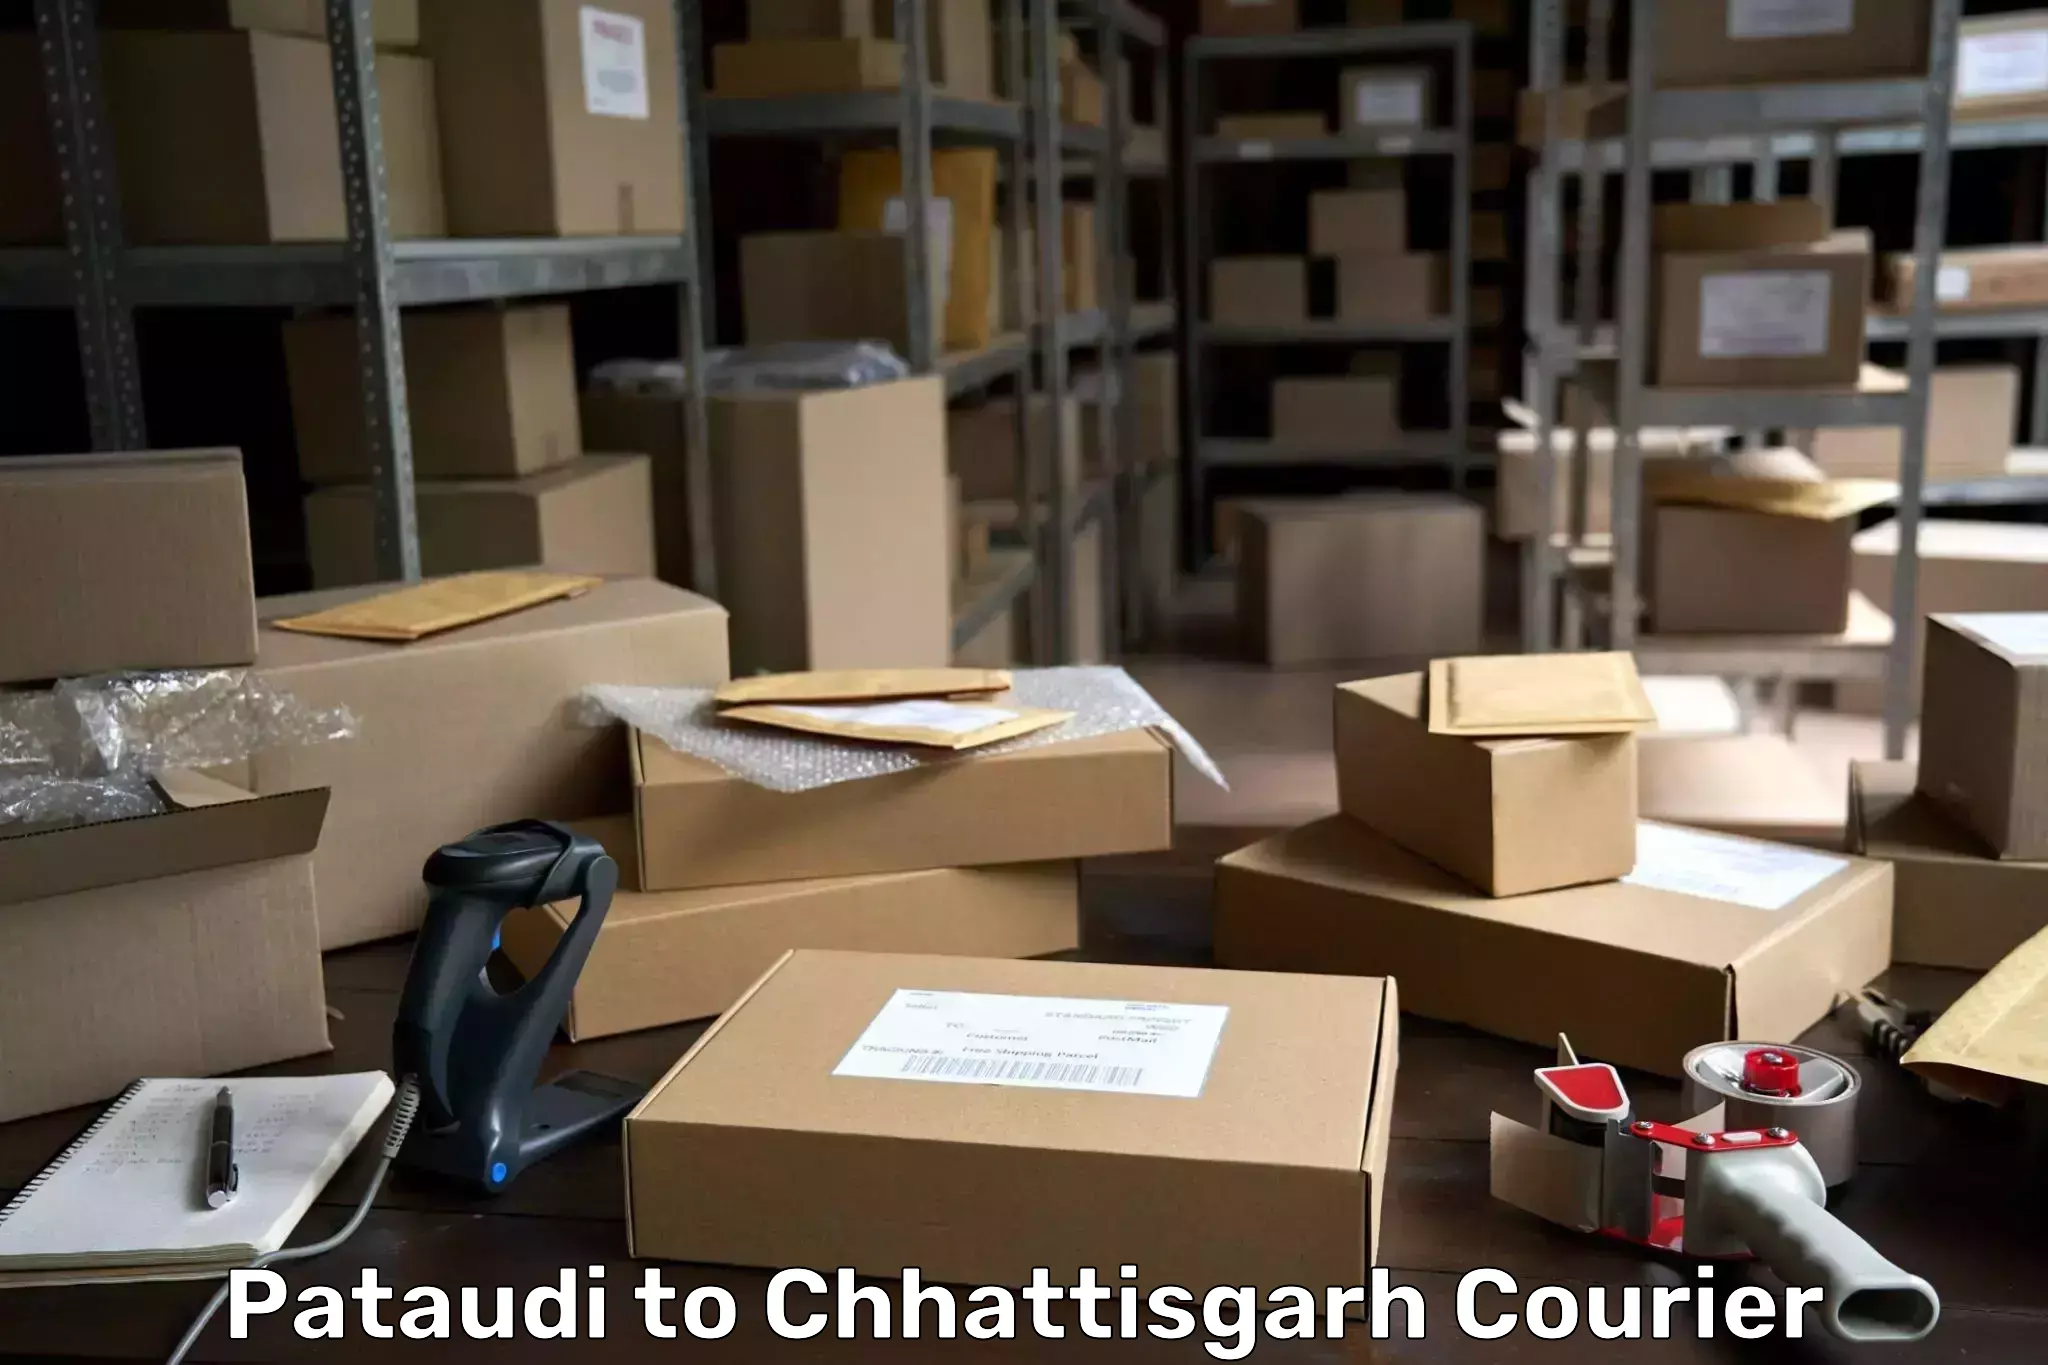 Door-to-door freight service Pataudi to Chhattisgarh